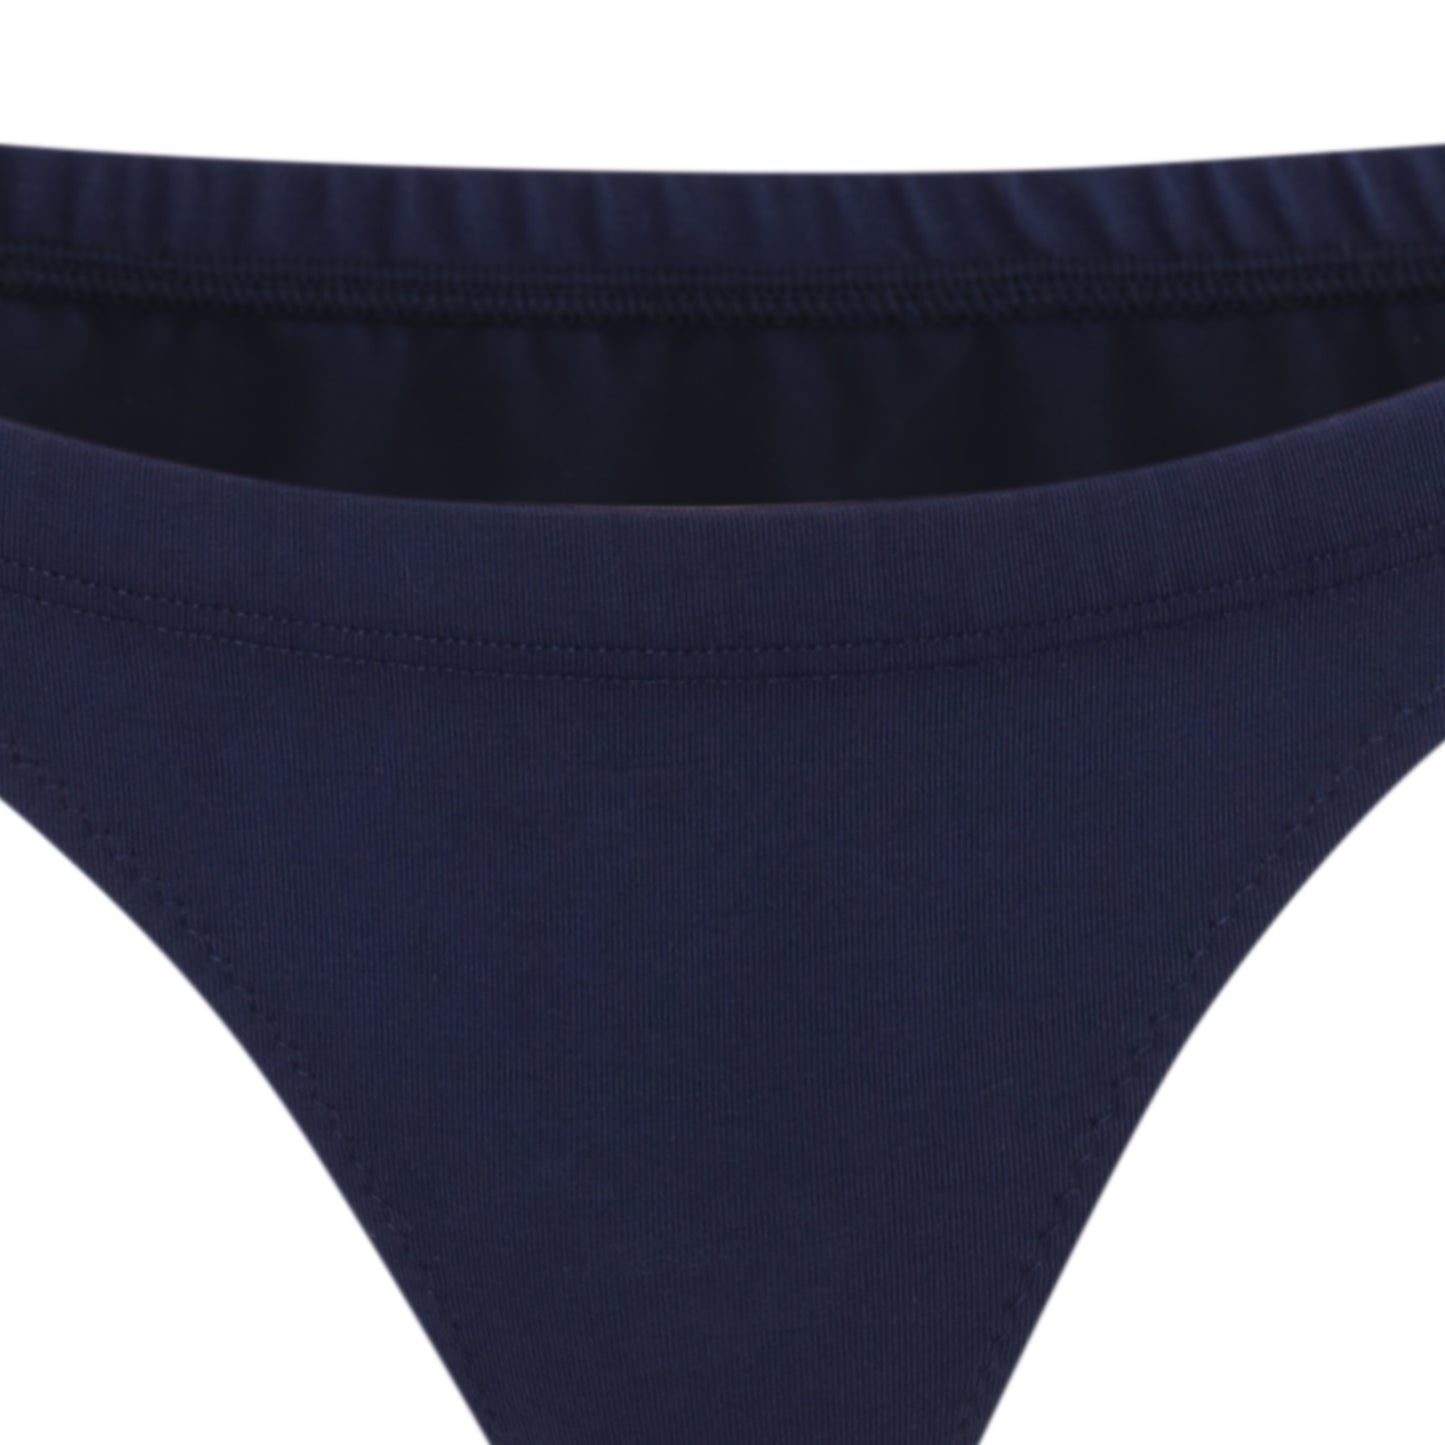 Navy blue organic cotton underwear | Women's underwear | low rise briefs | Lyzawear